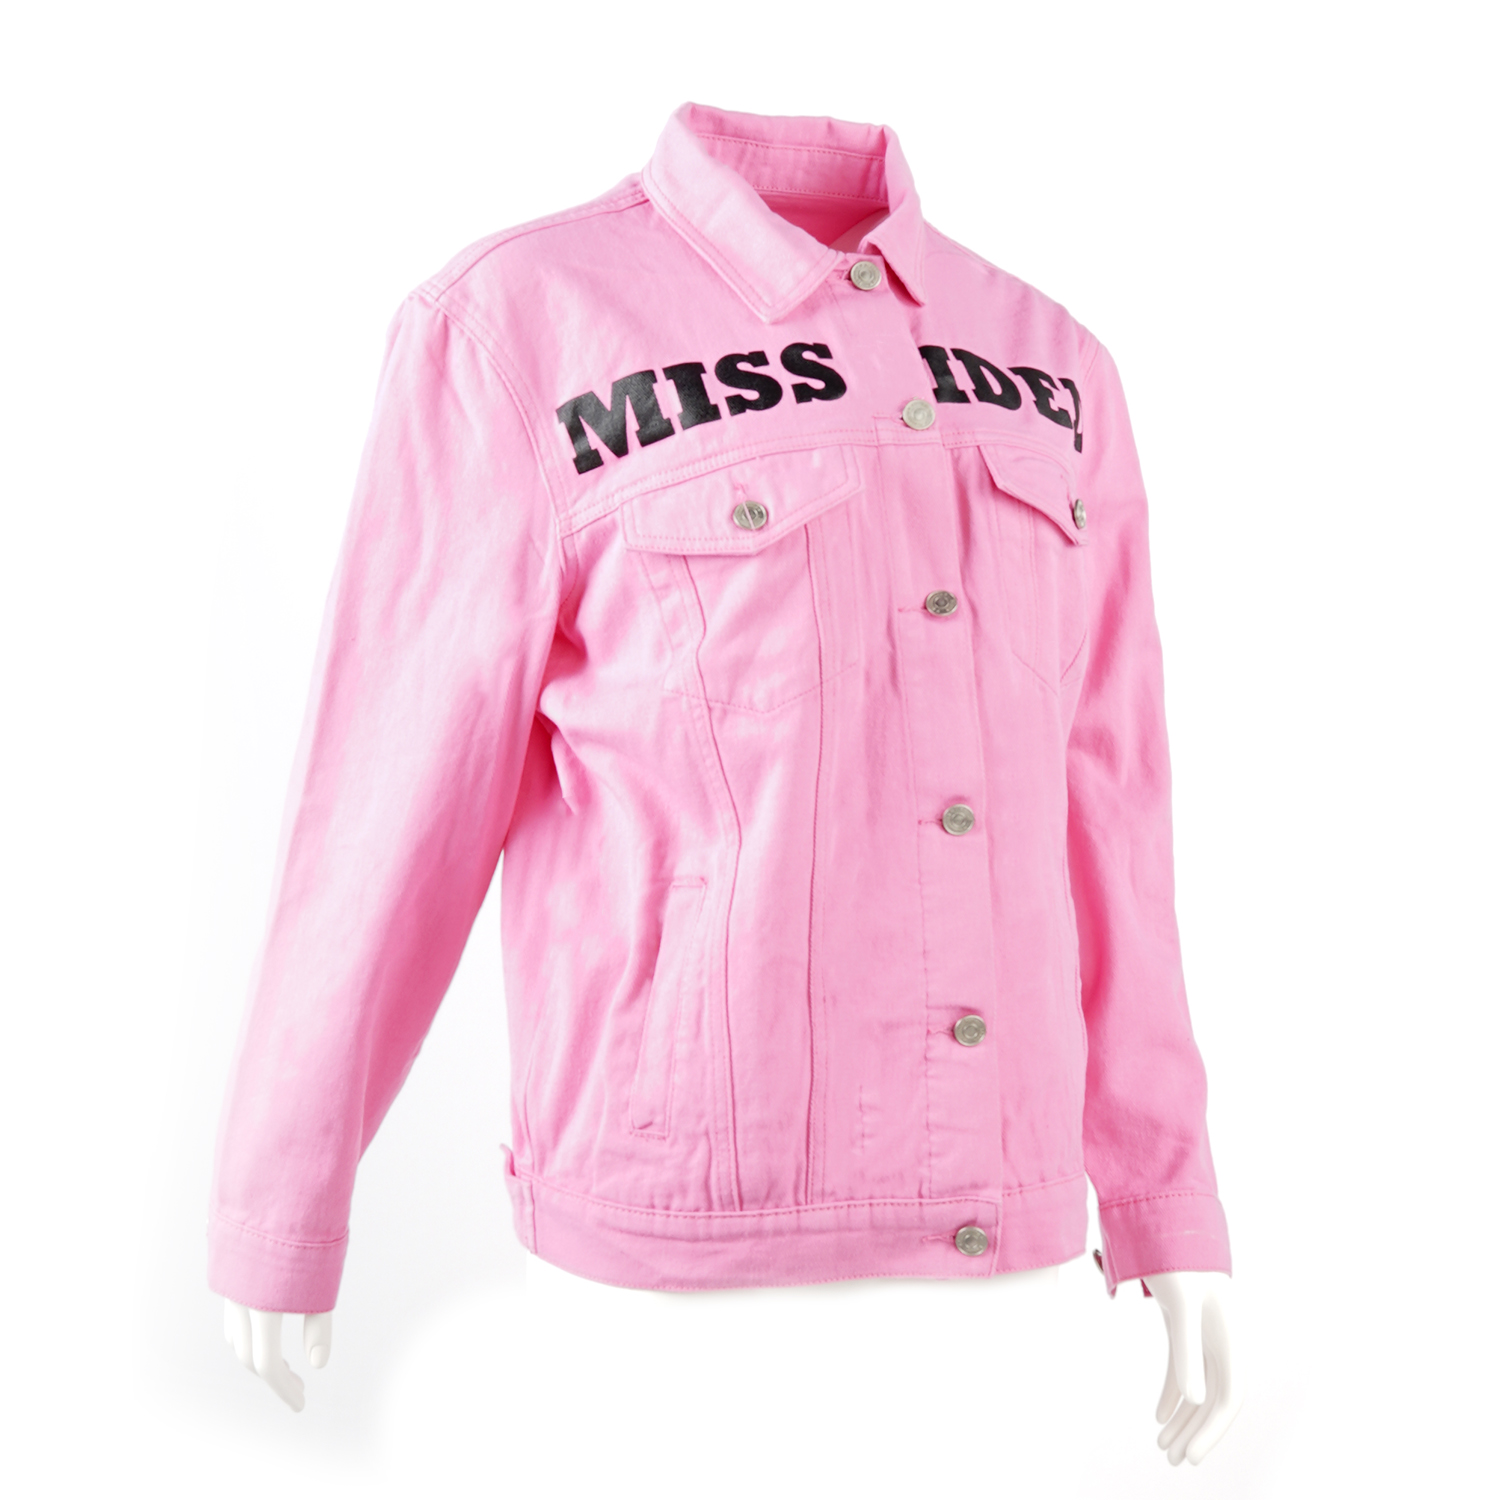 SKYKINGDOM wholesale jackets motorcycle streetwear single breasted pink printed jacket women